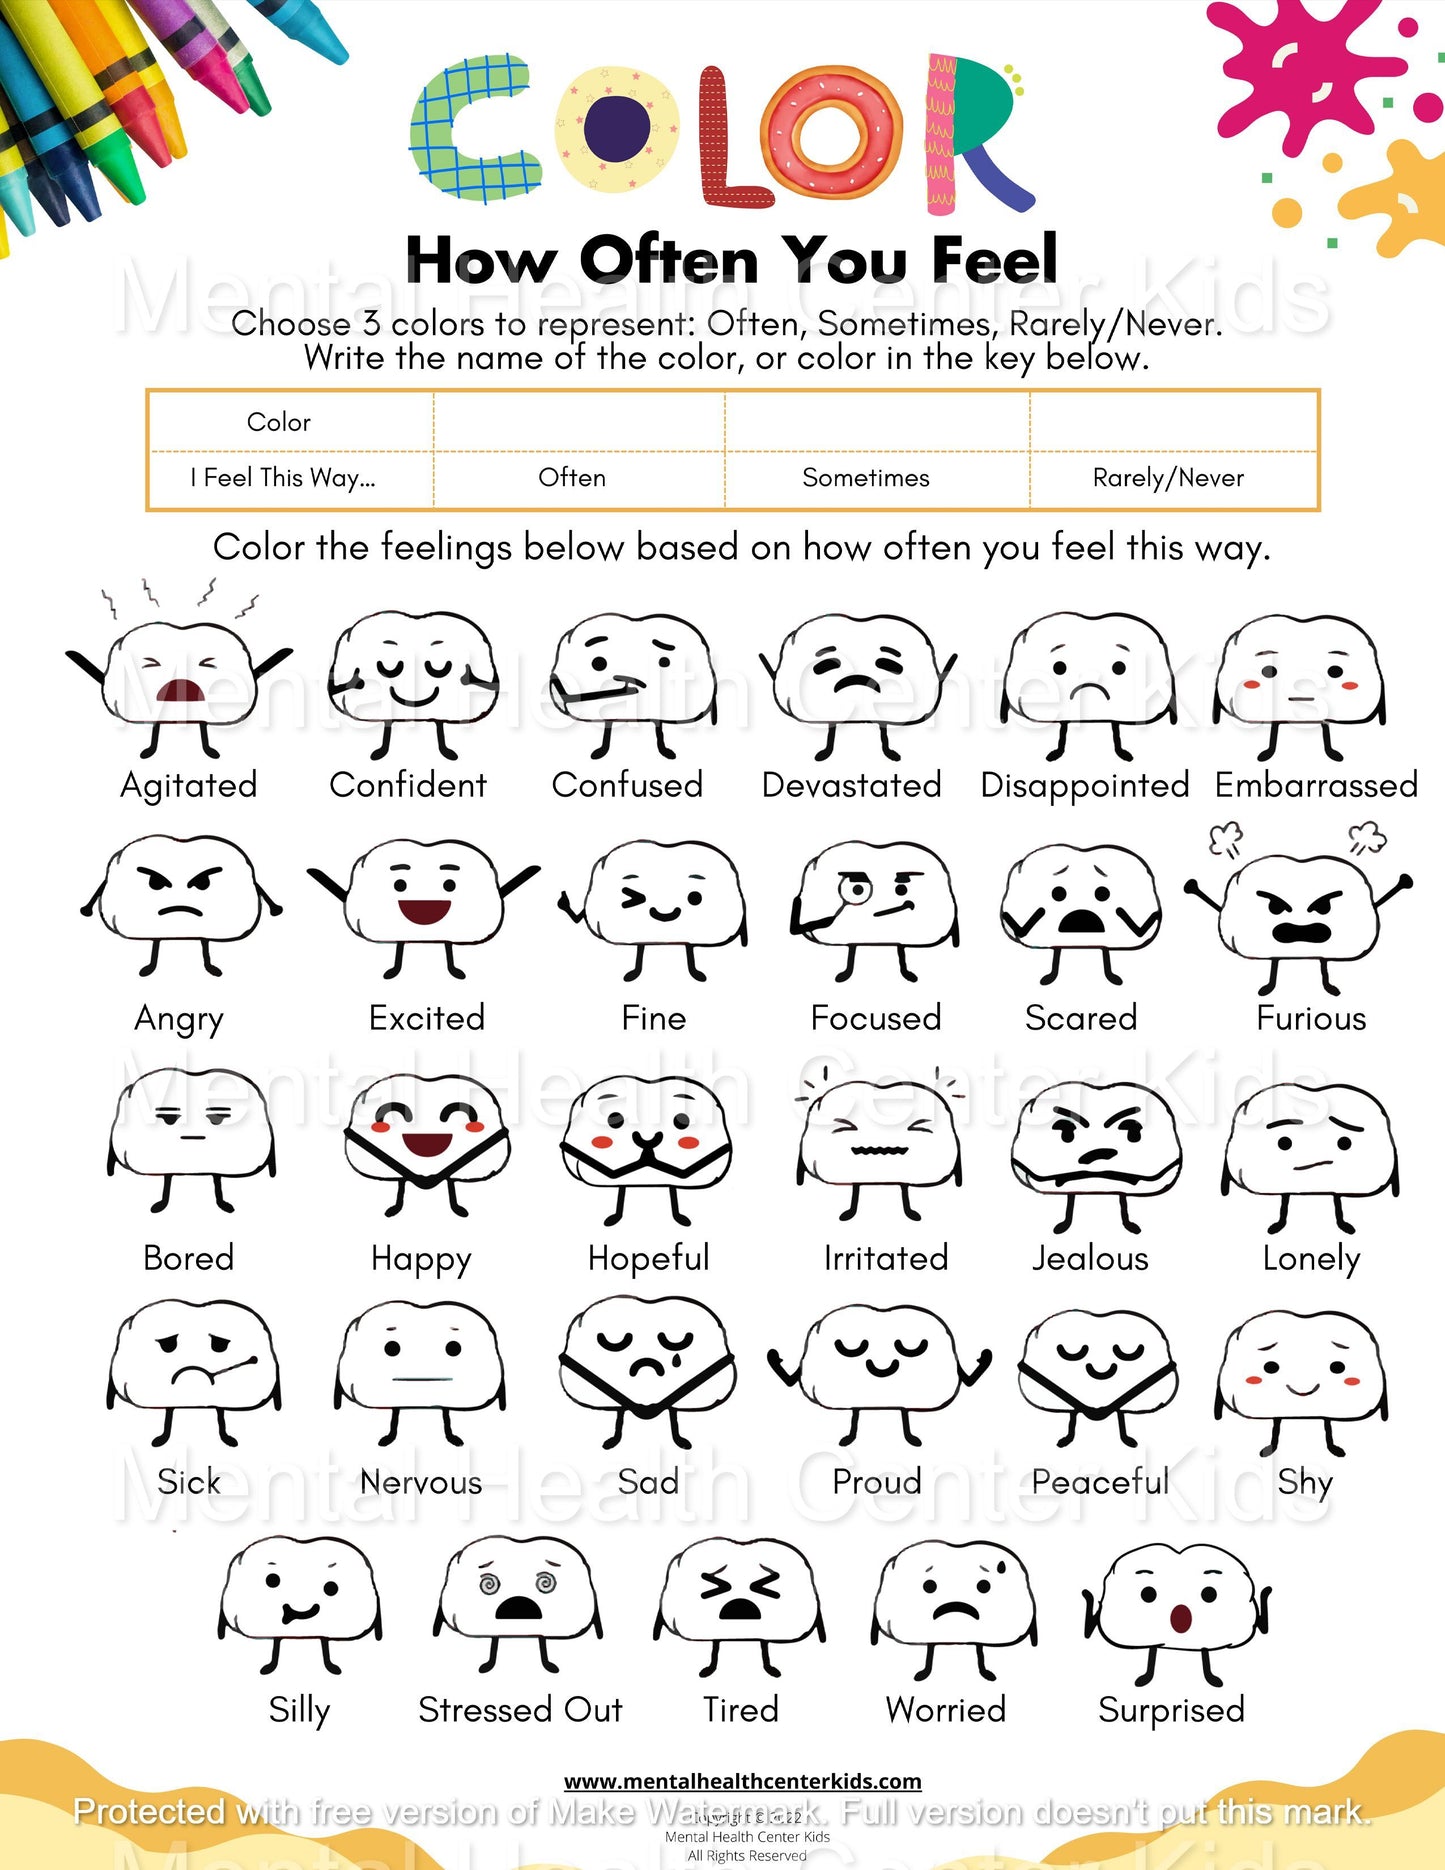 Feelings Activity Worksheet for Kids Color How You Often Feel